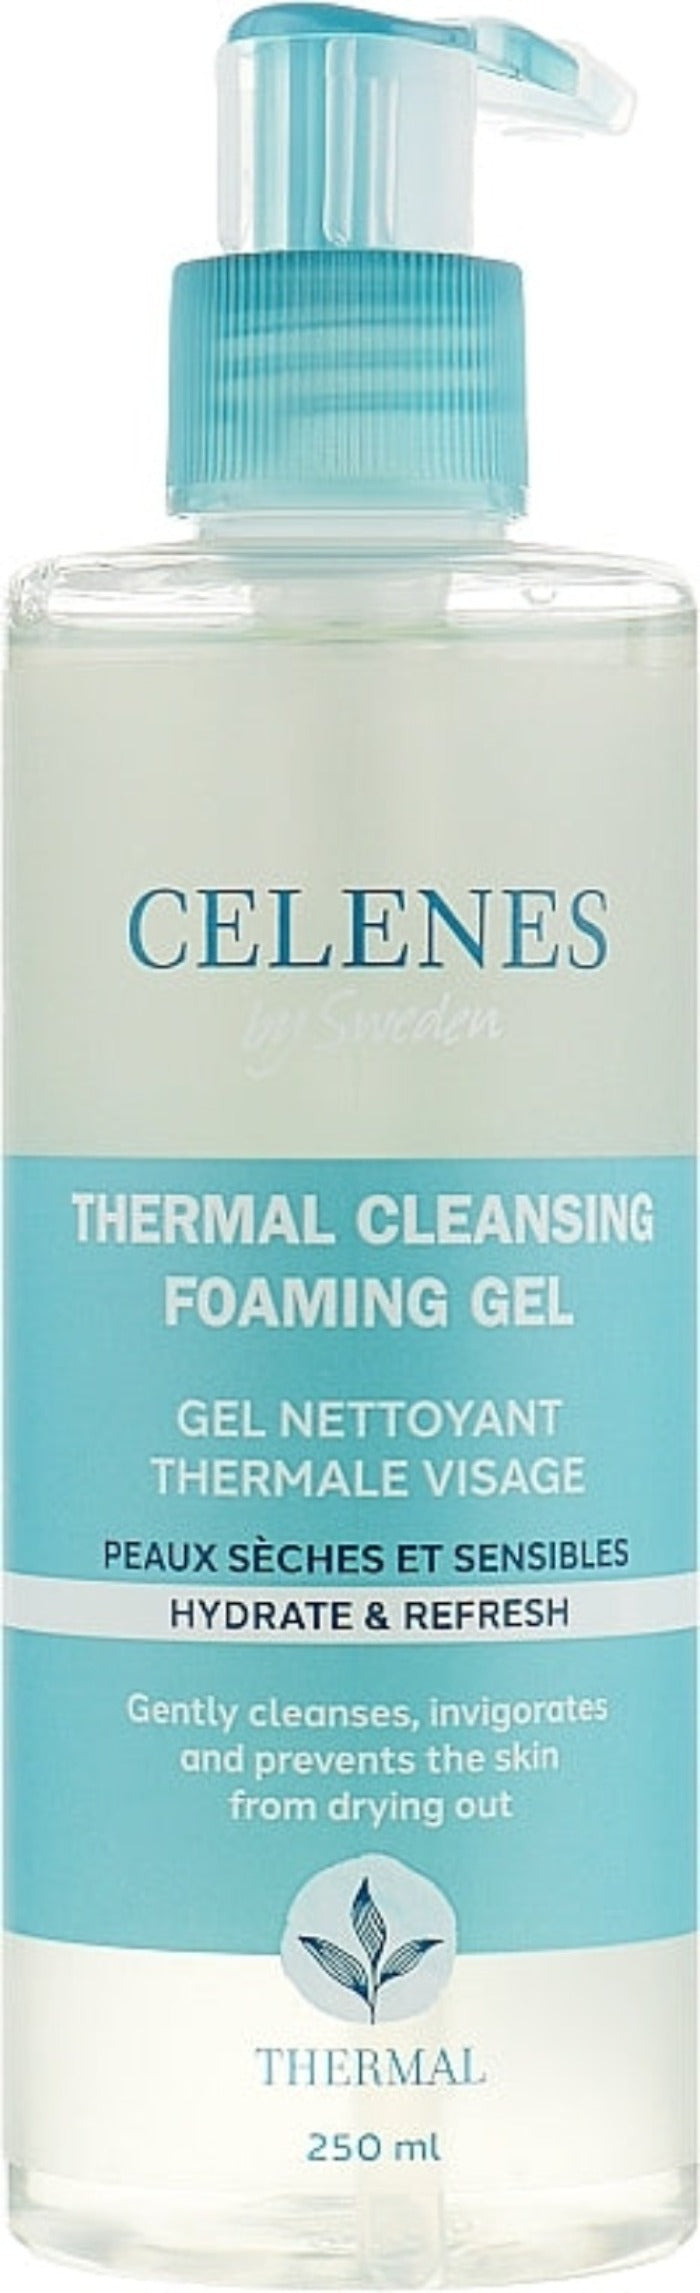 Celenes Thermal Cleansing Foaming Gel Dry & Sensitive Skin- 250 ml